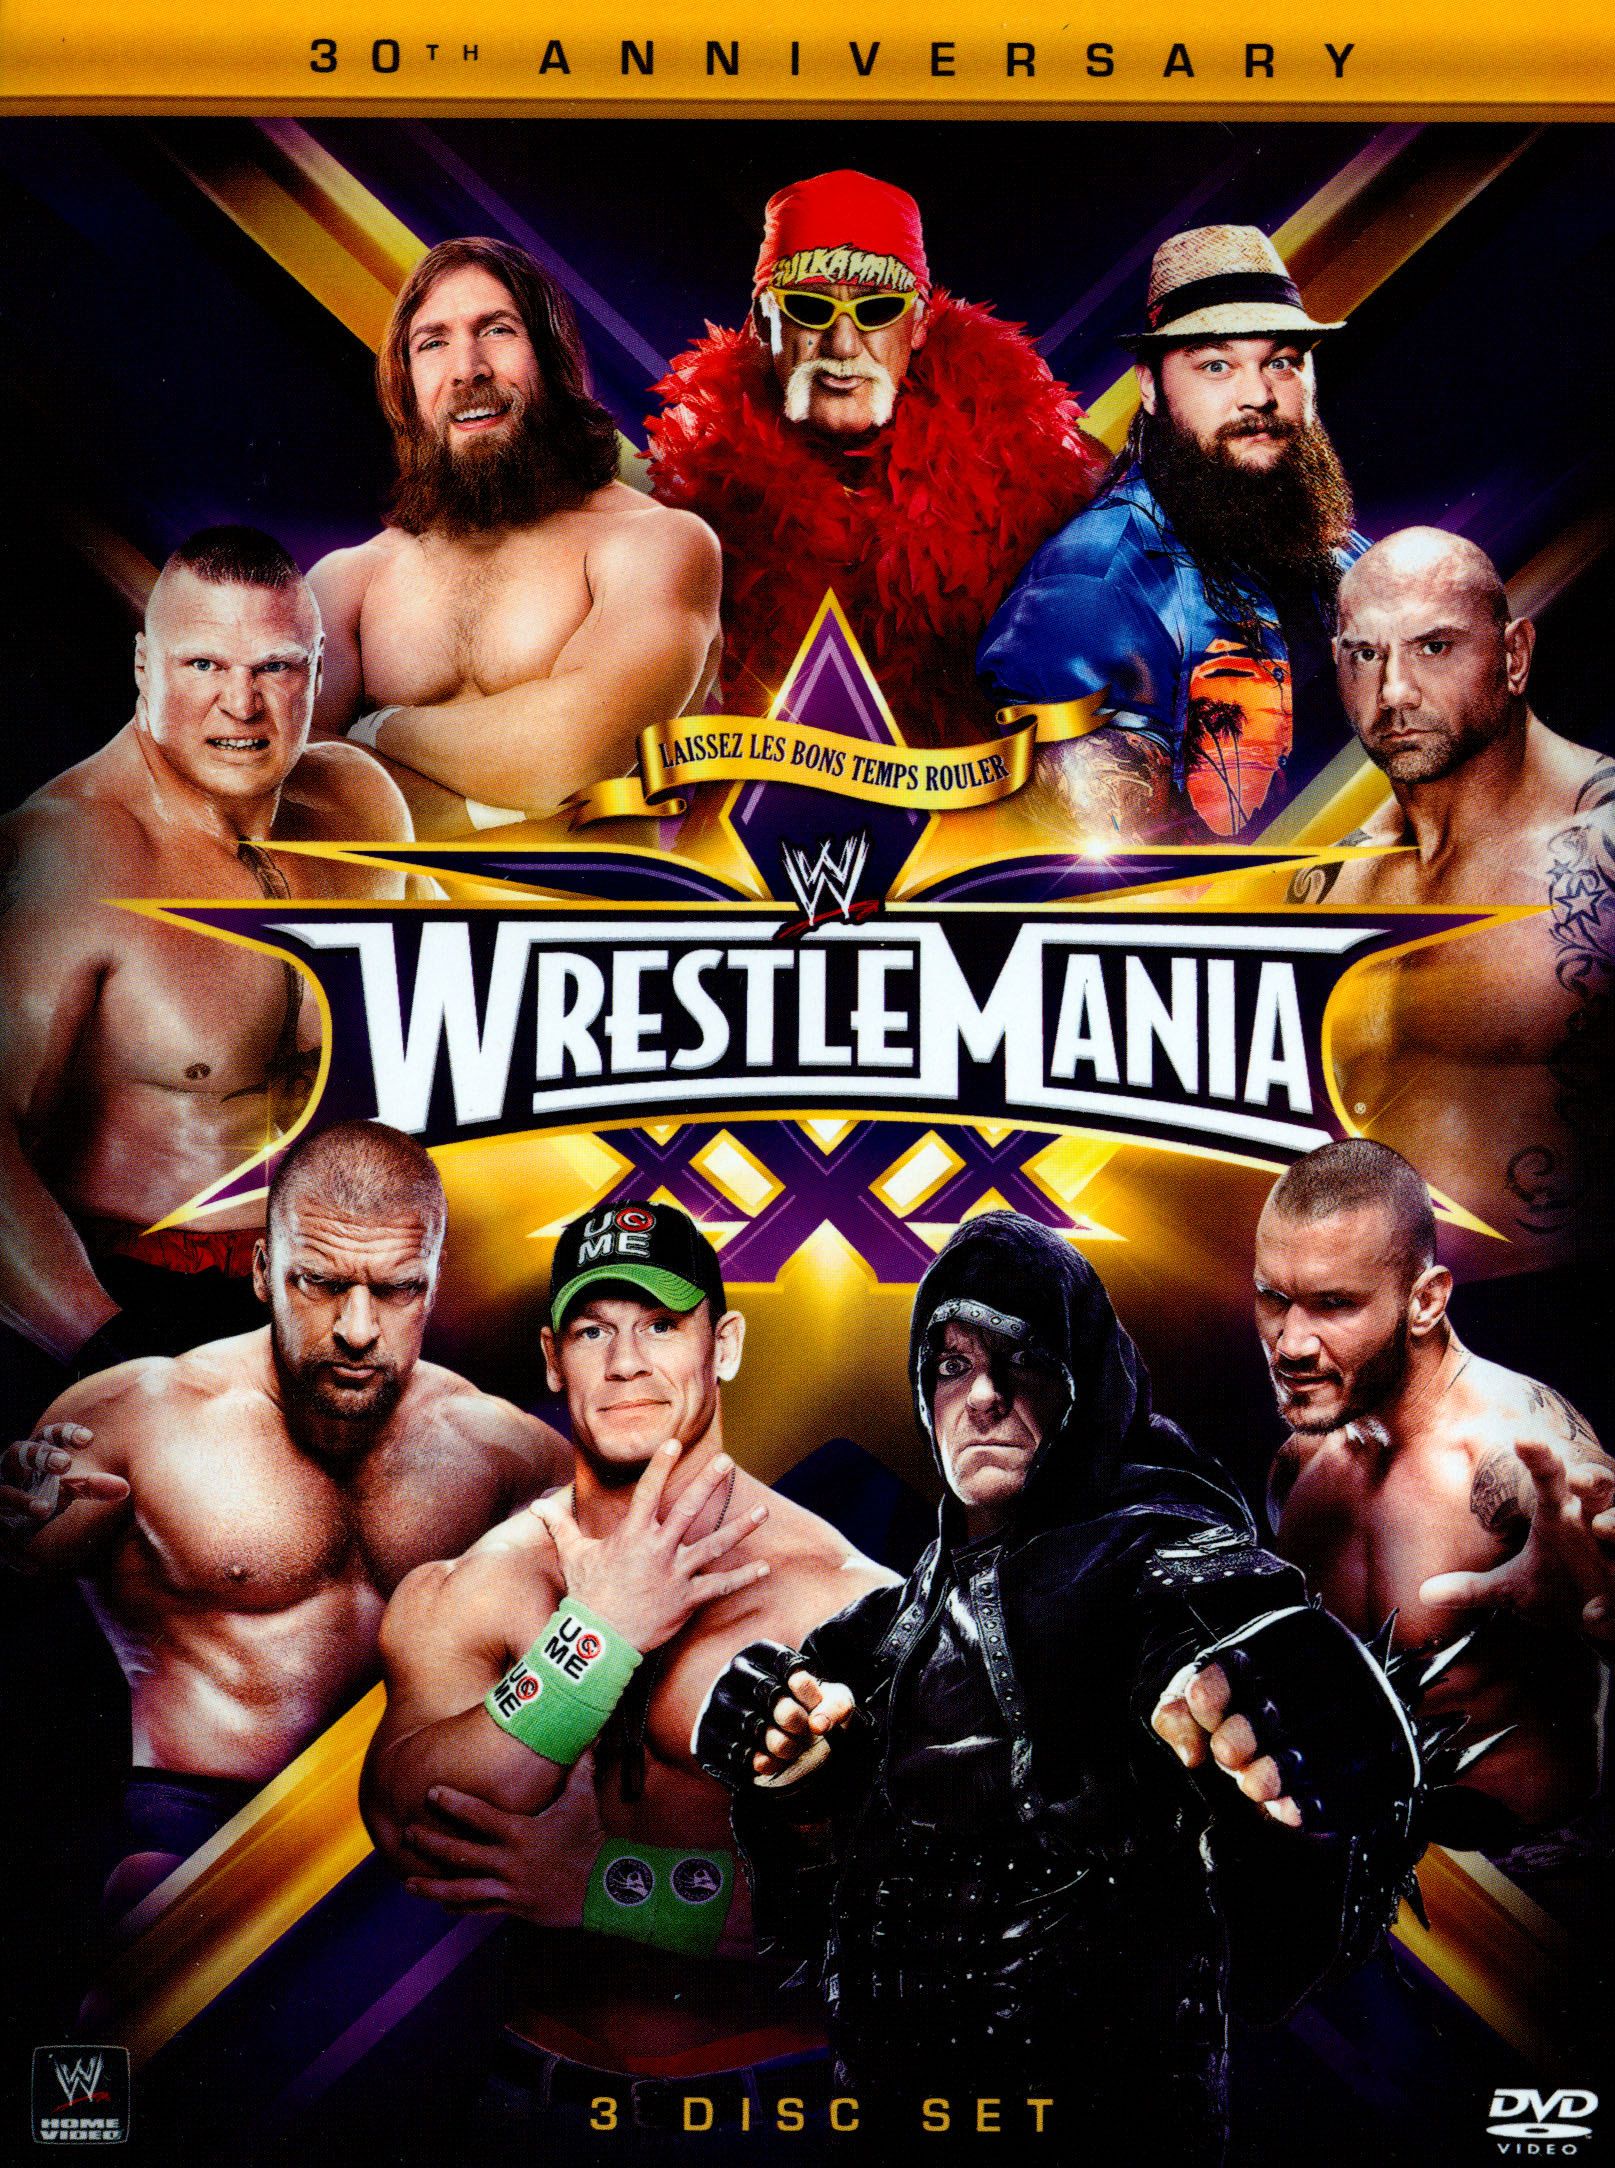 Wwe Wrestling Star Xxxx Video - WWE: Wrestlemania XXX [DVD] [2014] - Best Buy